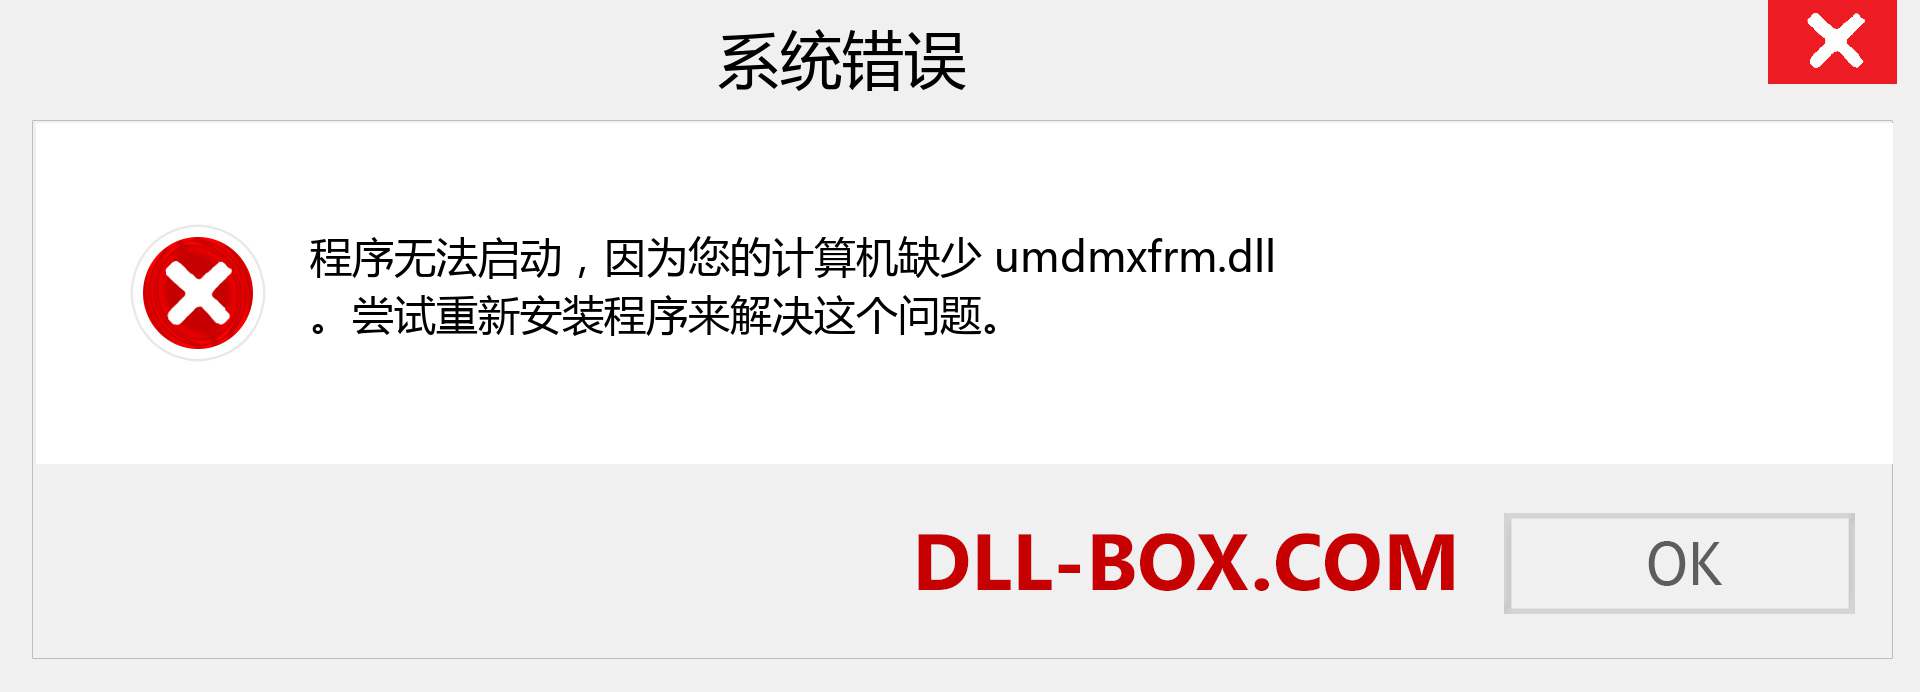 umdmxfrm.dll 文件丢失？。 适用于 Windows 7、8、10 的下载 - 修复 Windows、照片、图像上的 umdmxfrm dll 丢失错误